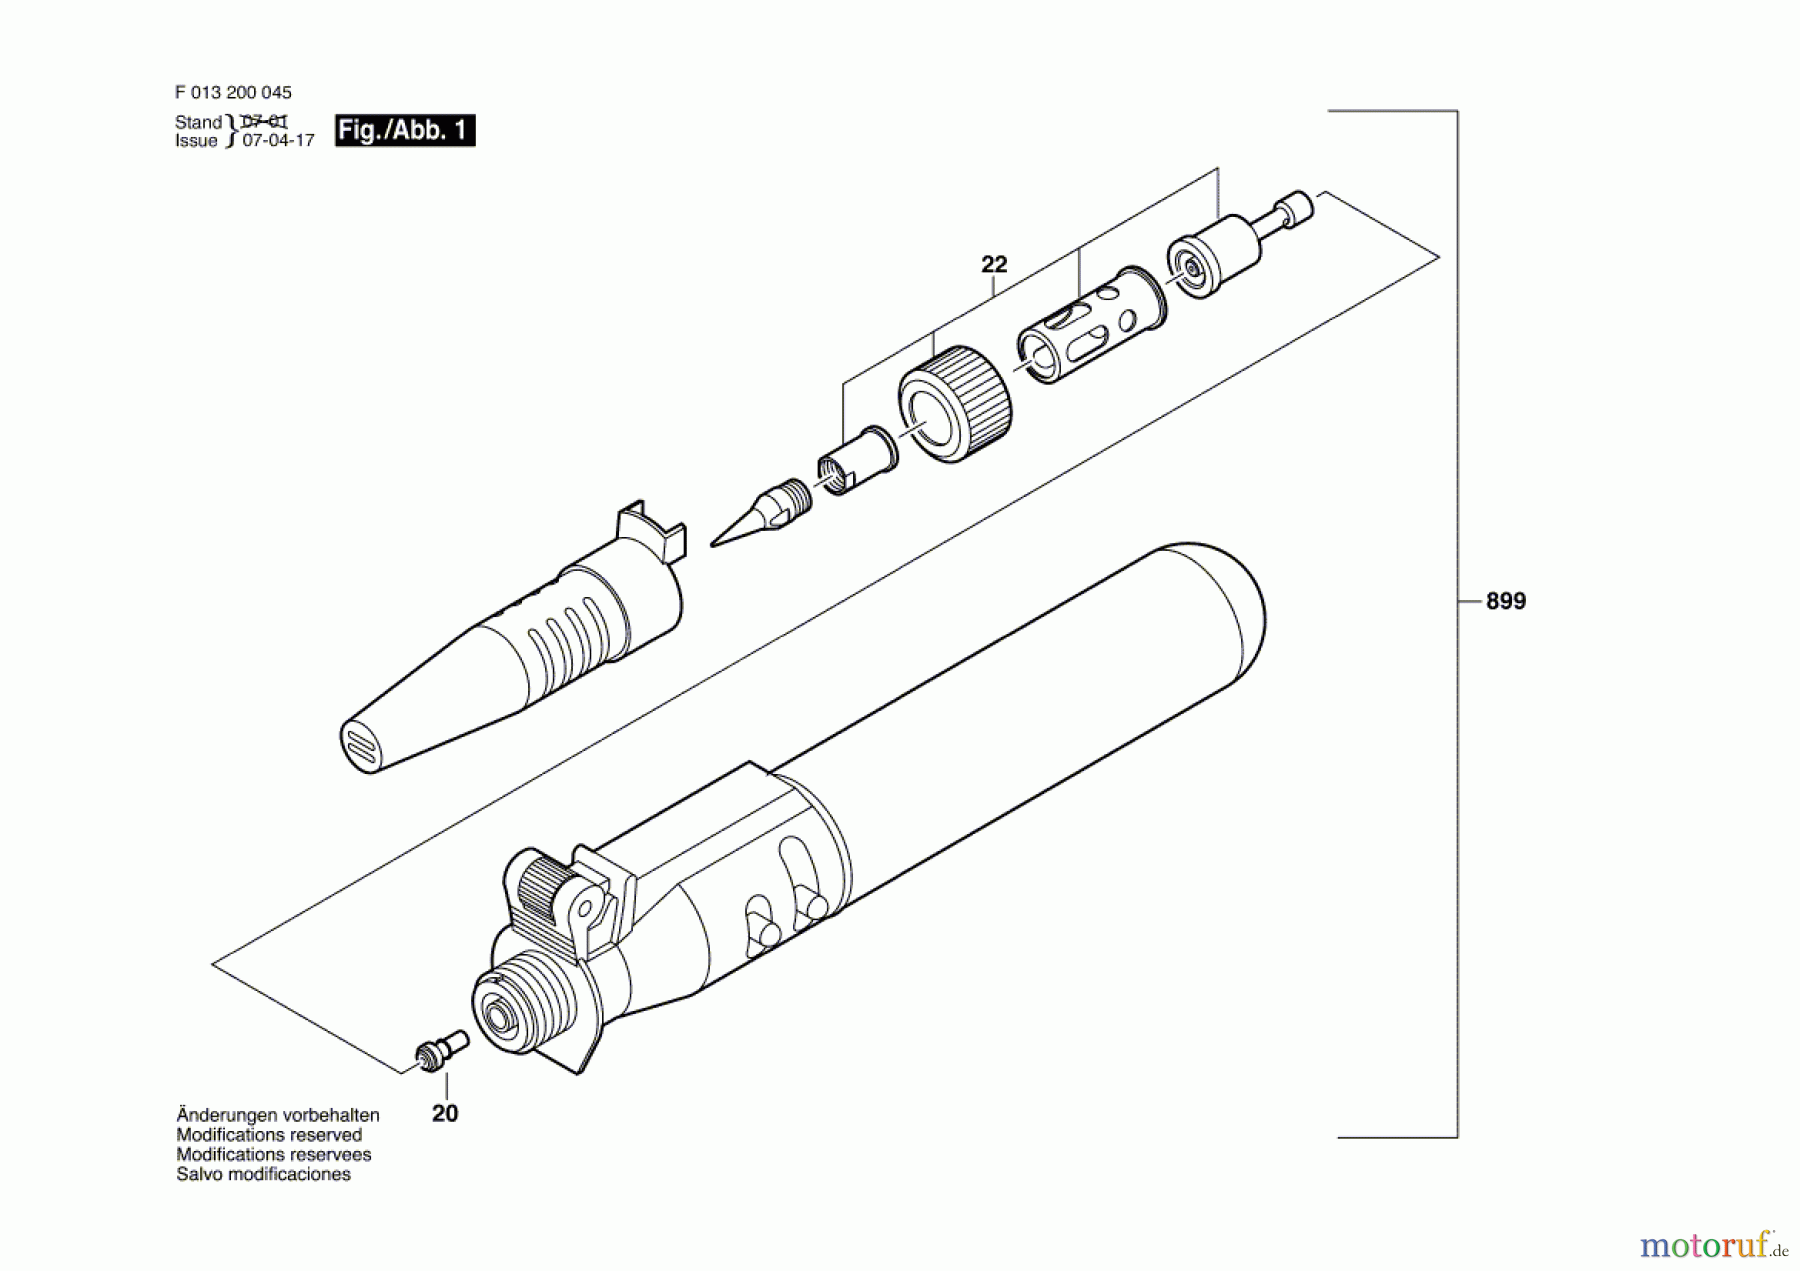  Bosch Werkzeug Loetwerkzeug 2000 Seite 1